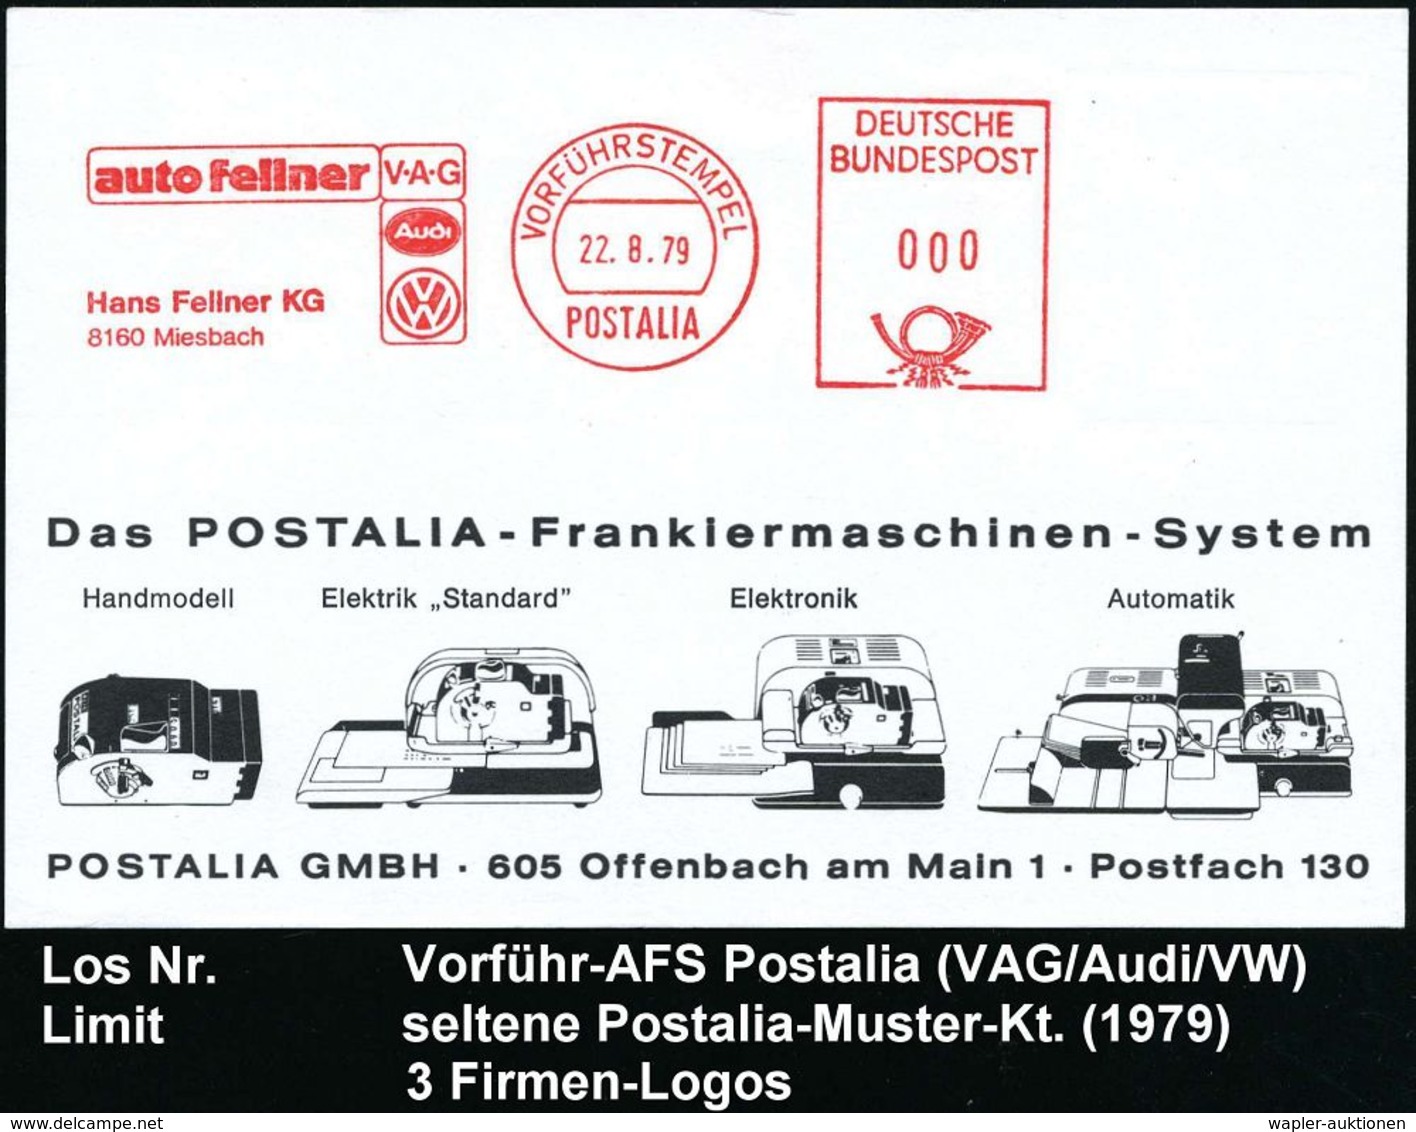 VOLKSWAGEN / VW / K.-D.-F.-WAGEN / PORSCHE : 8160 Miesbach 1979 (22.8.) AFS: VORFÜRHSTEMPEL/POSTALIA/auto Fellner/V-A-G/ - Automobili